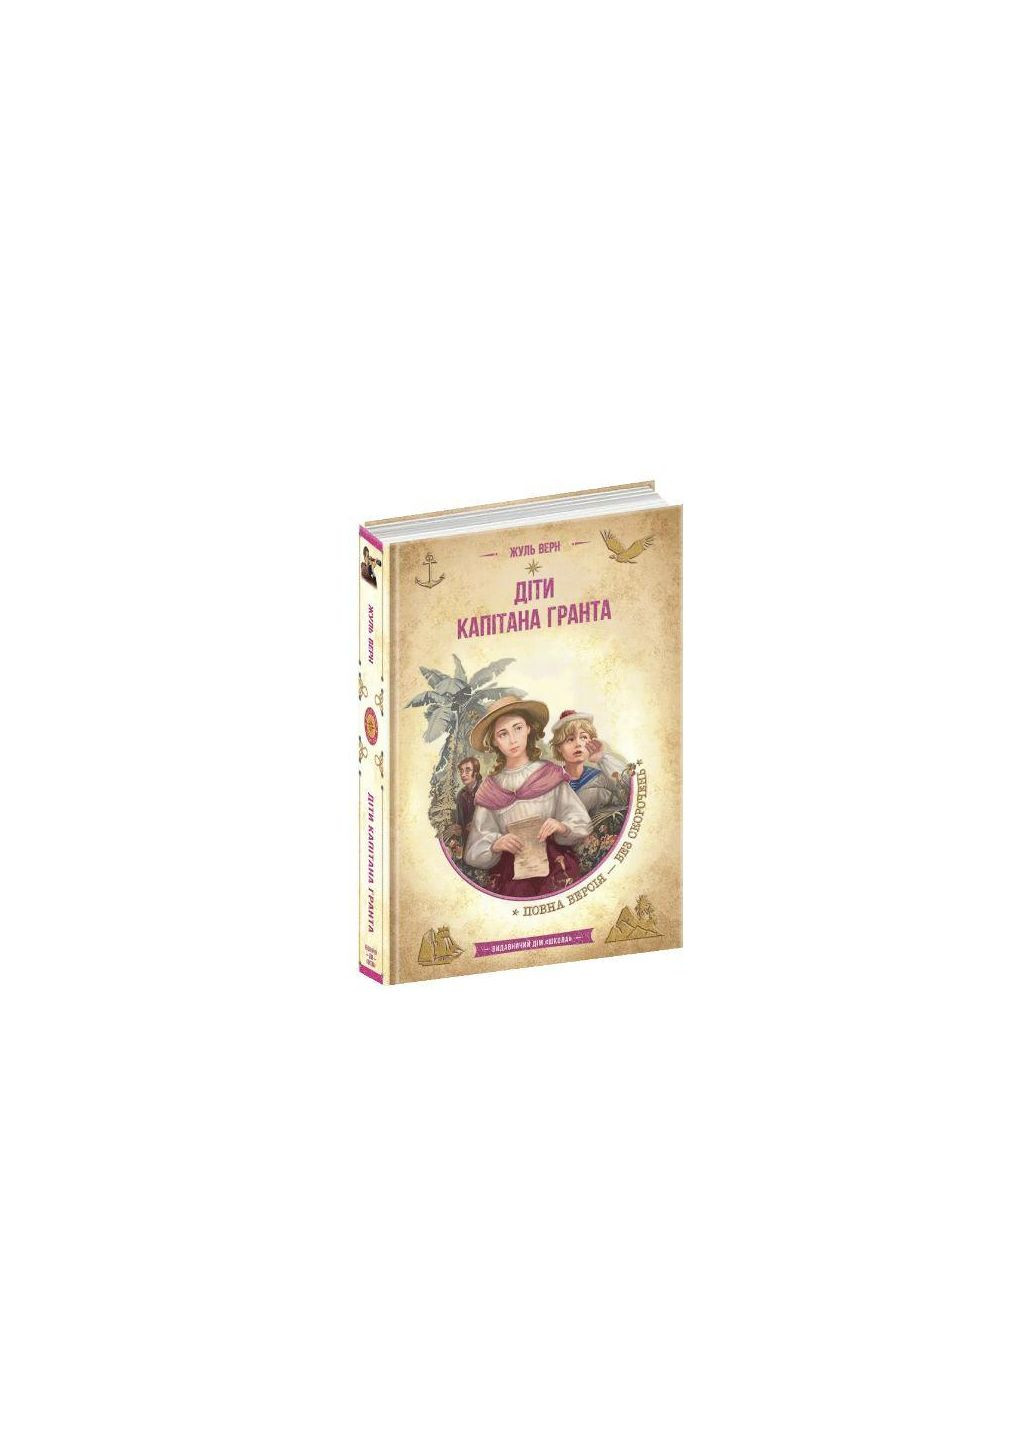 Книга Дети капитана Гранта. Жюль Верн (на украинском языке) Видавничий дім Школа (273239530)